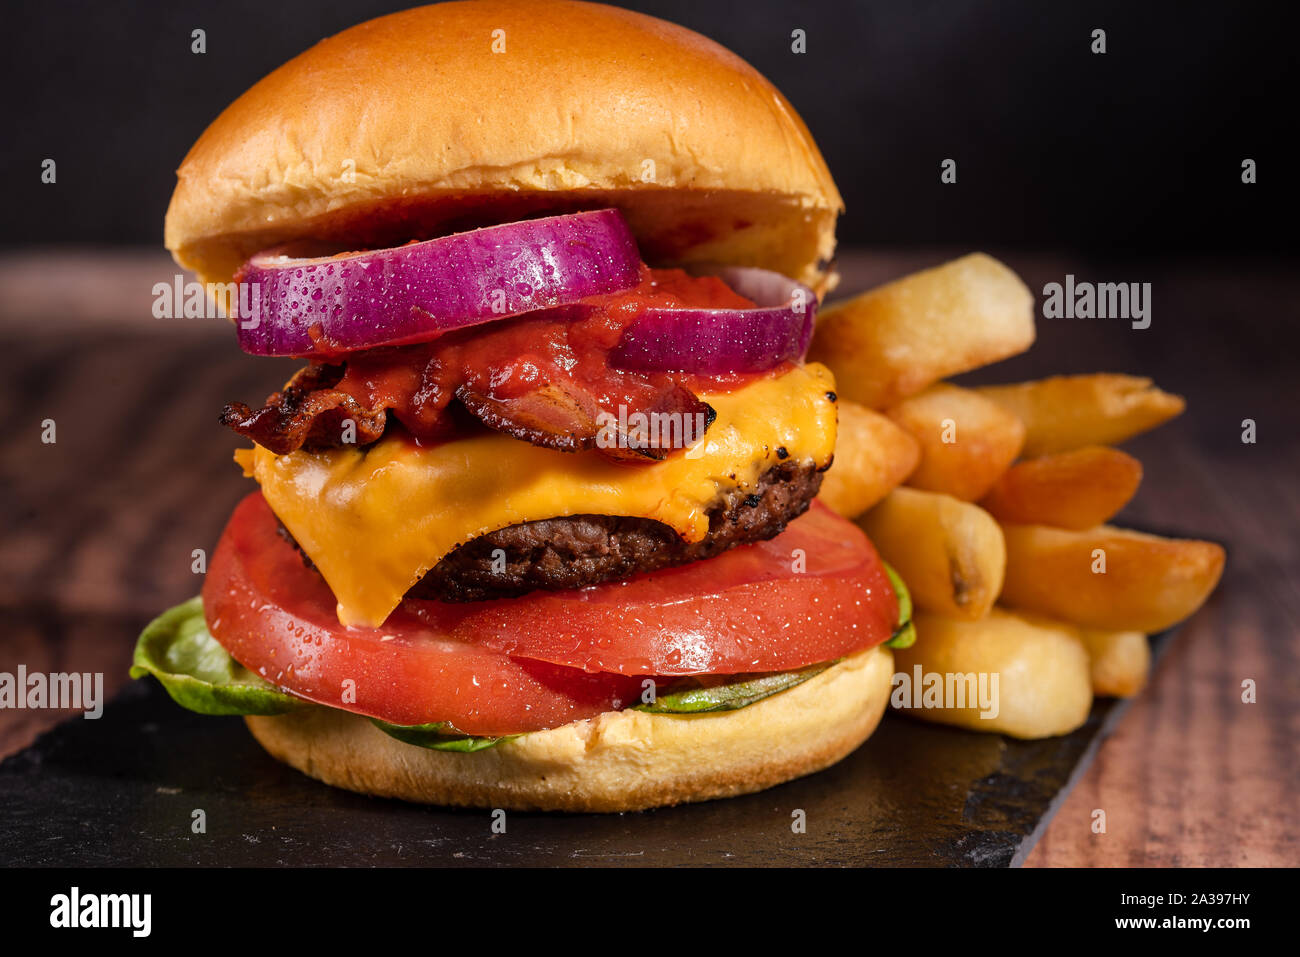 Bacon Cheeseburger with Lettuce Tomato Onion on a Dark Background and Brioche bun Stock Photo